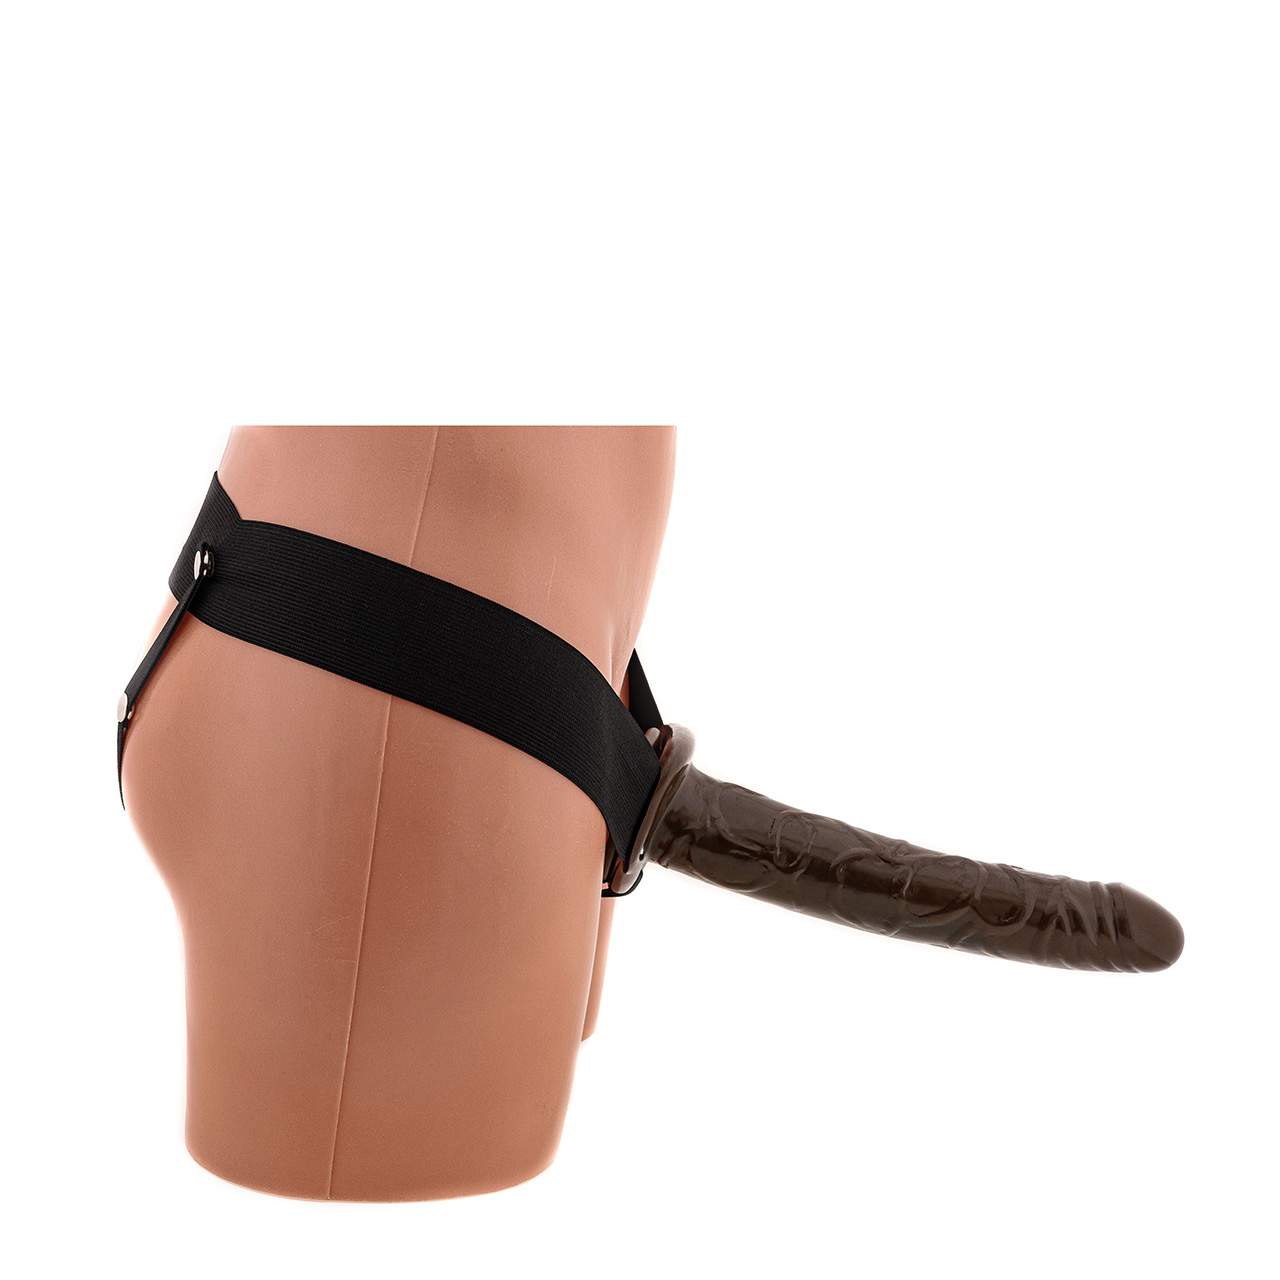 Realistyczny brązowy strap-on proteza penisa na gumce dla panów - 25 cm